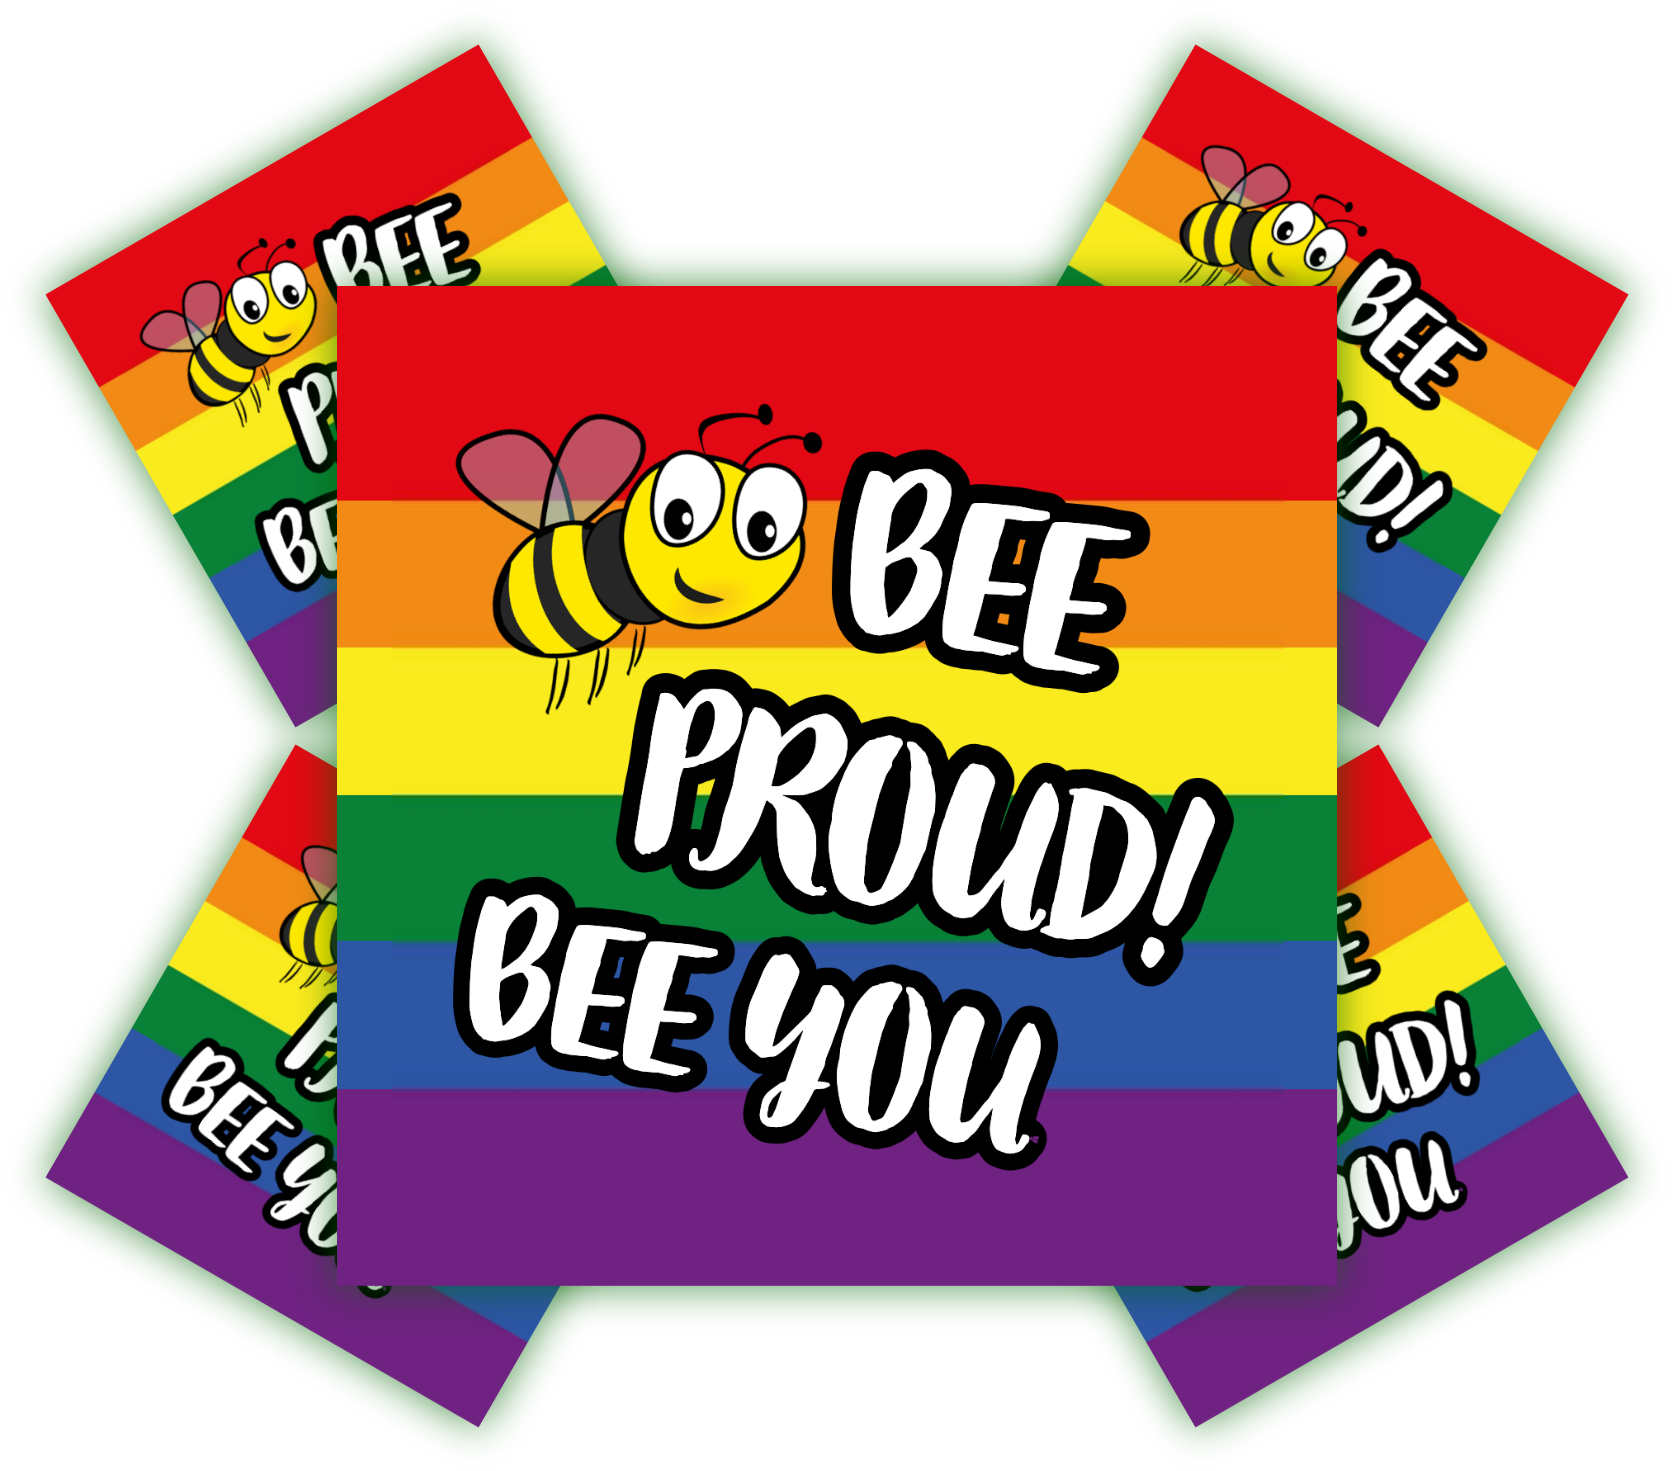 Bee Proud! Bee you | Aufkleber